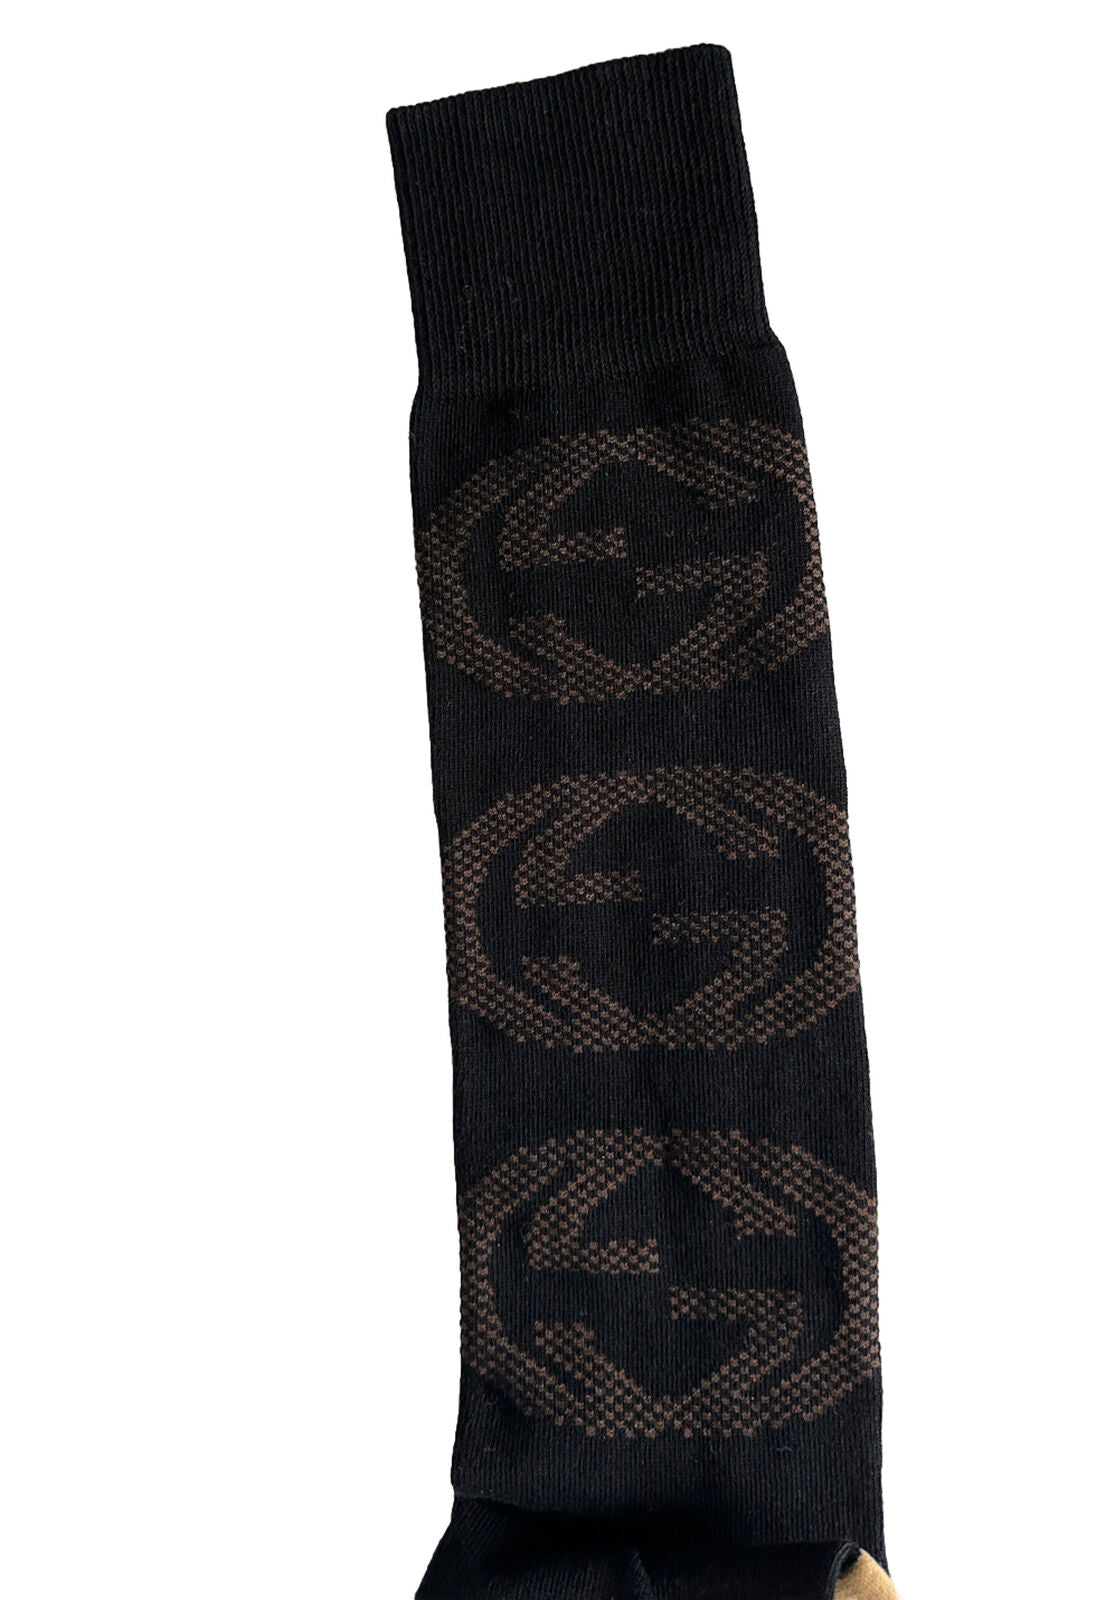 Носки NWT Gucci GG черные/бежевые, размер S (18-20 см), производство Италия 675854 